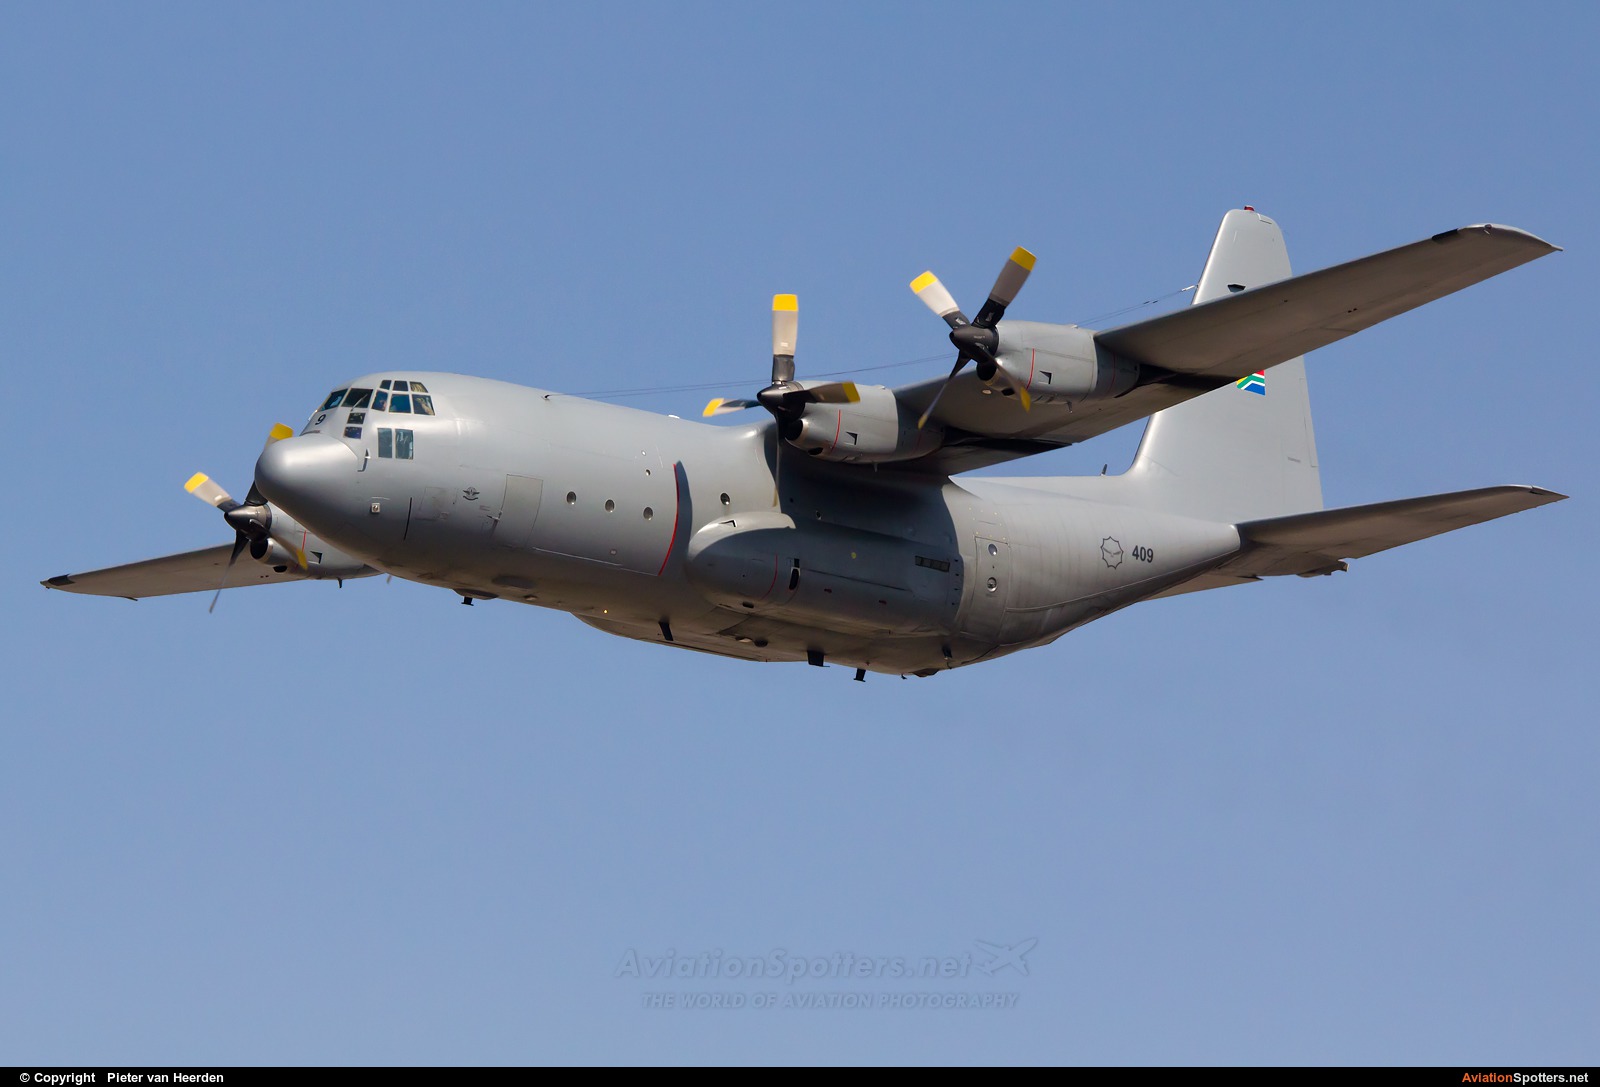 South Africa - Air Force  -  C-130BZ Hercules  (409) By Pieter van Heerden (pieter78)